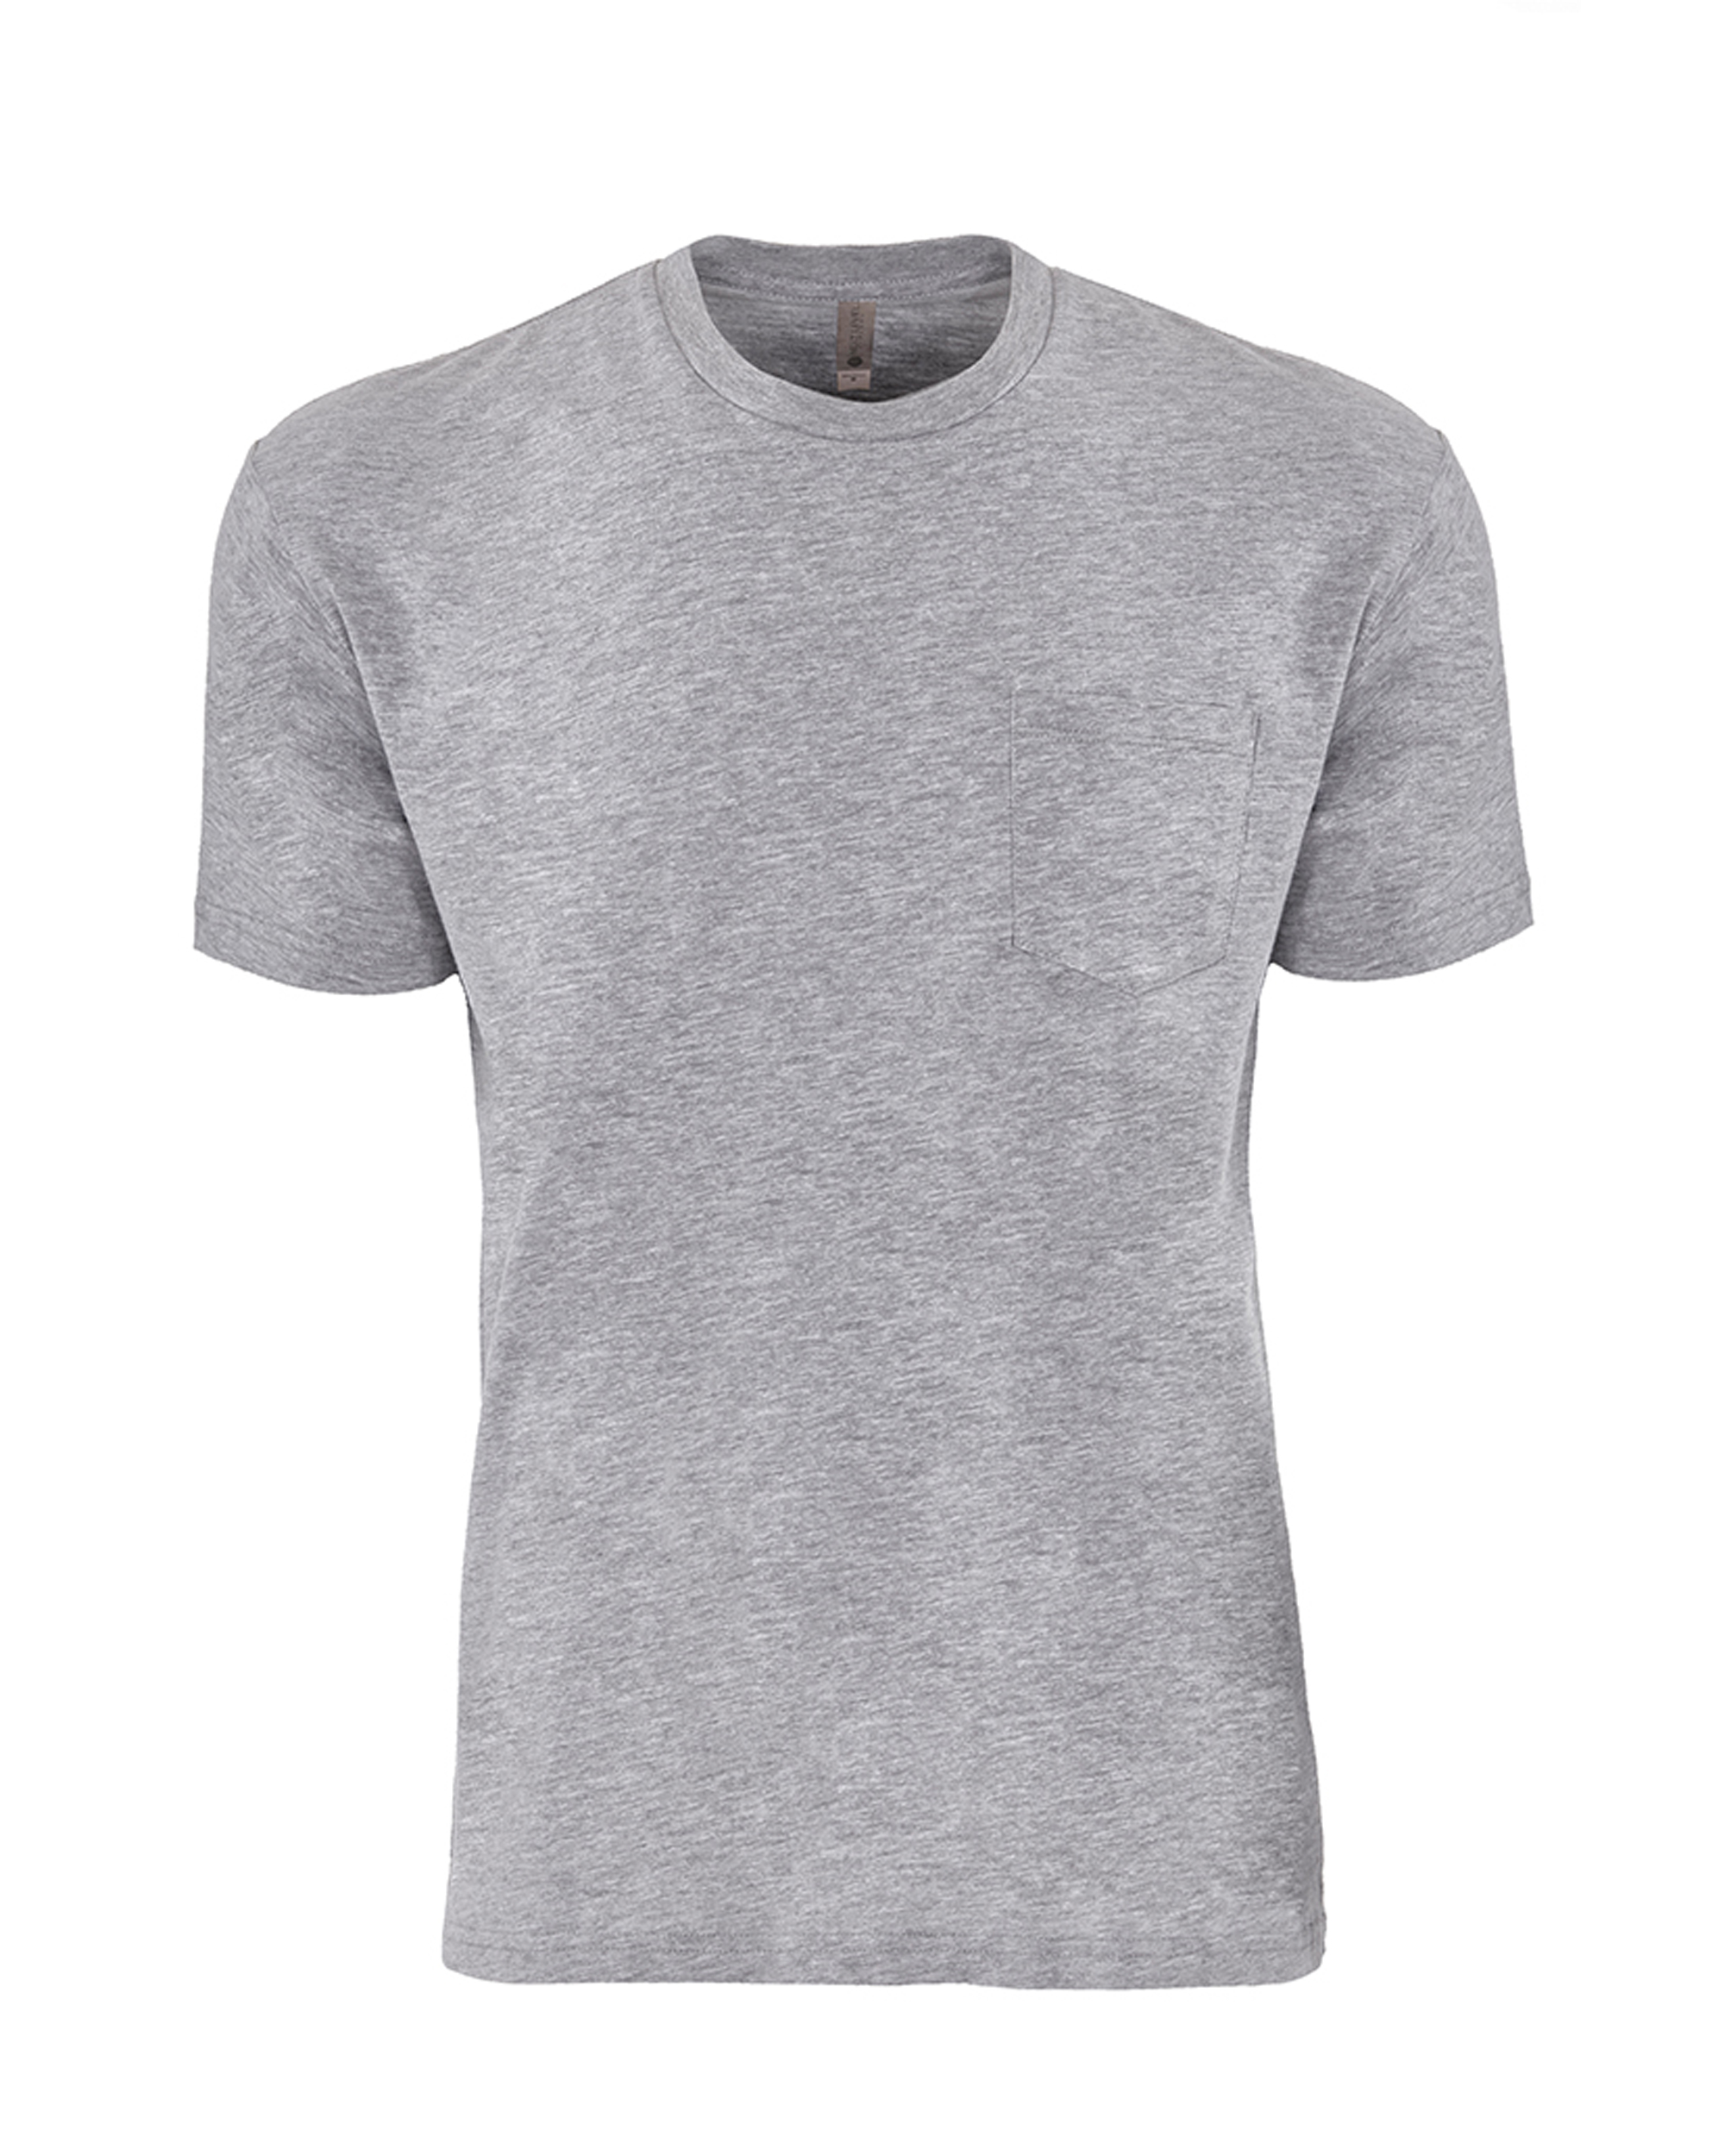 Next Level Apparel® 3605 Unisex Cotton Pocket T-Shirt